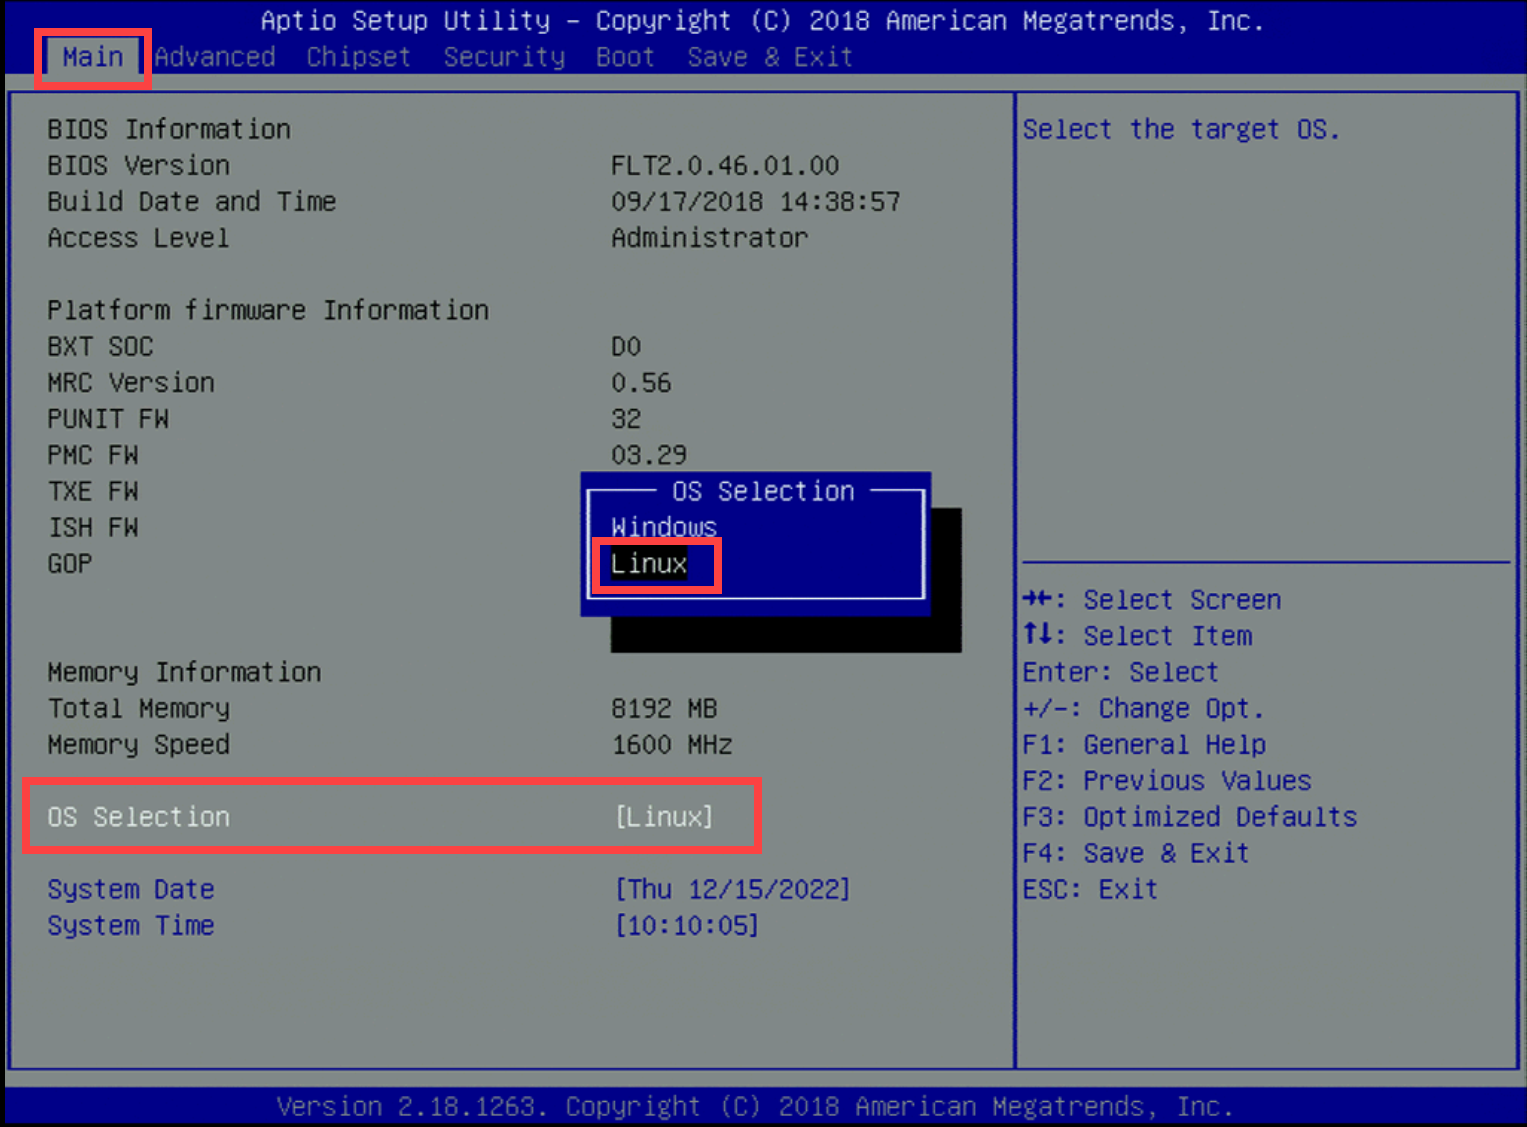 Képernyőkép az operációs rendszer Linuxra való beállításáról az YS-FIT2 rendszeren.